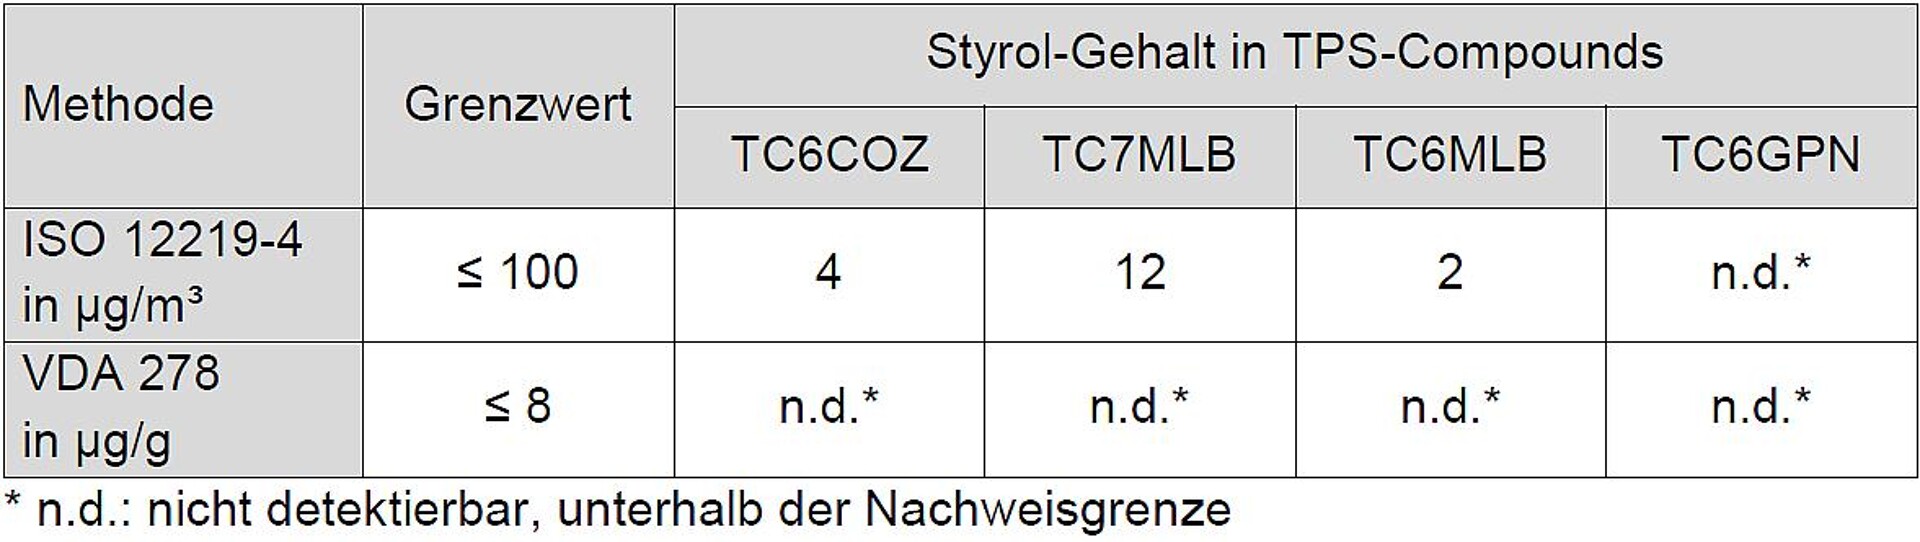 Tabelle 2: Styrol-Gehalt in TPS-Compounds gemäß ISO 12219-4 und VDA 278, Grenzwerte aus DBL 5430 (2017-12). (Quelle: Kraiburg TPE)